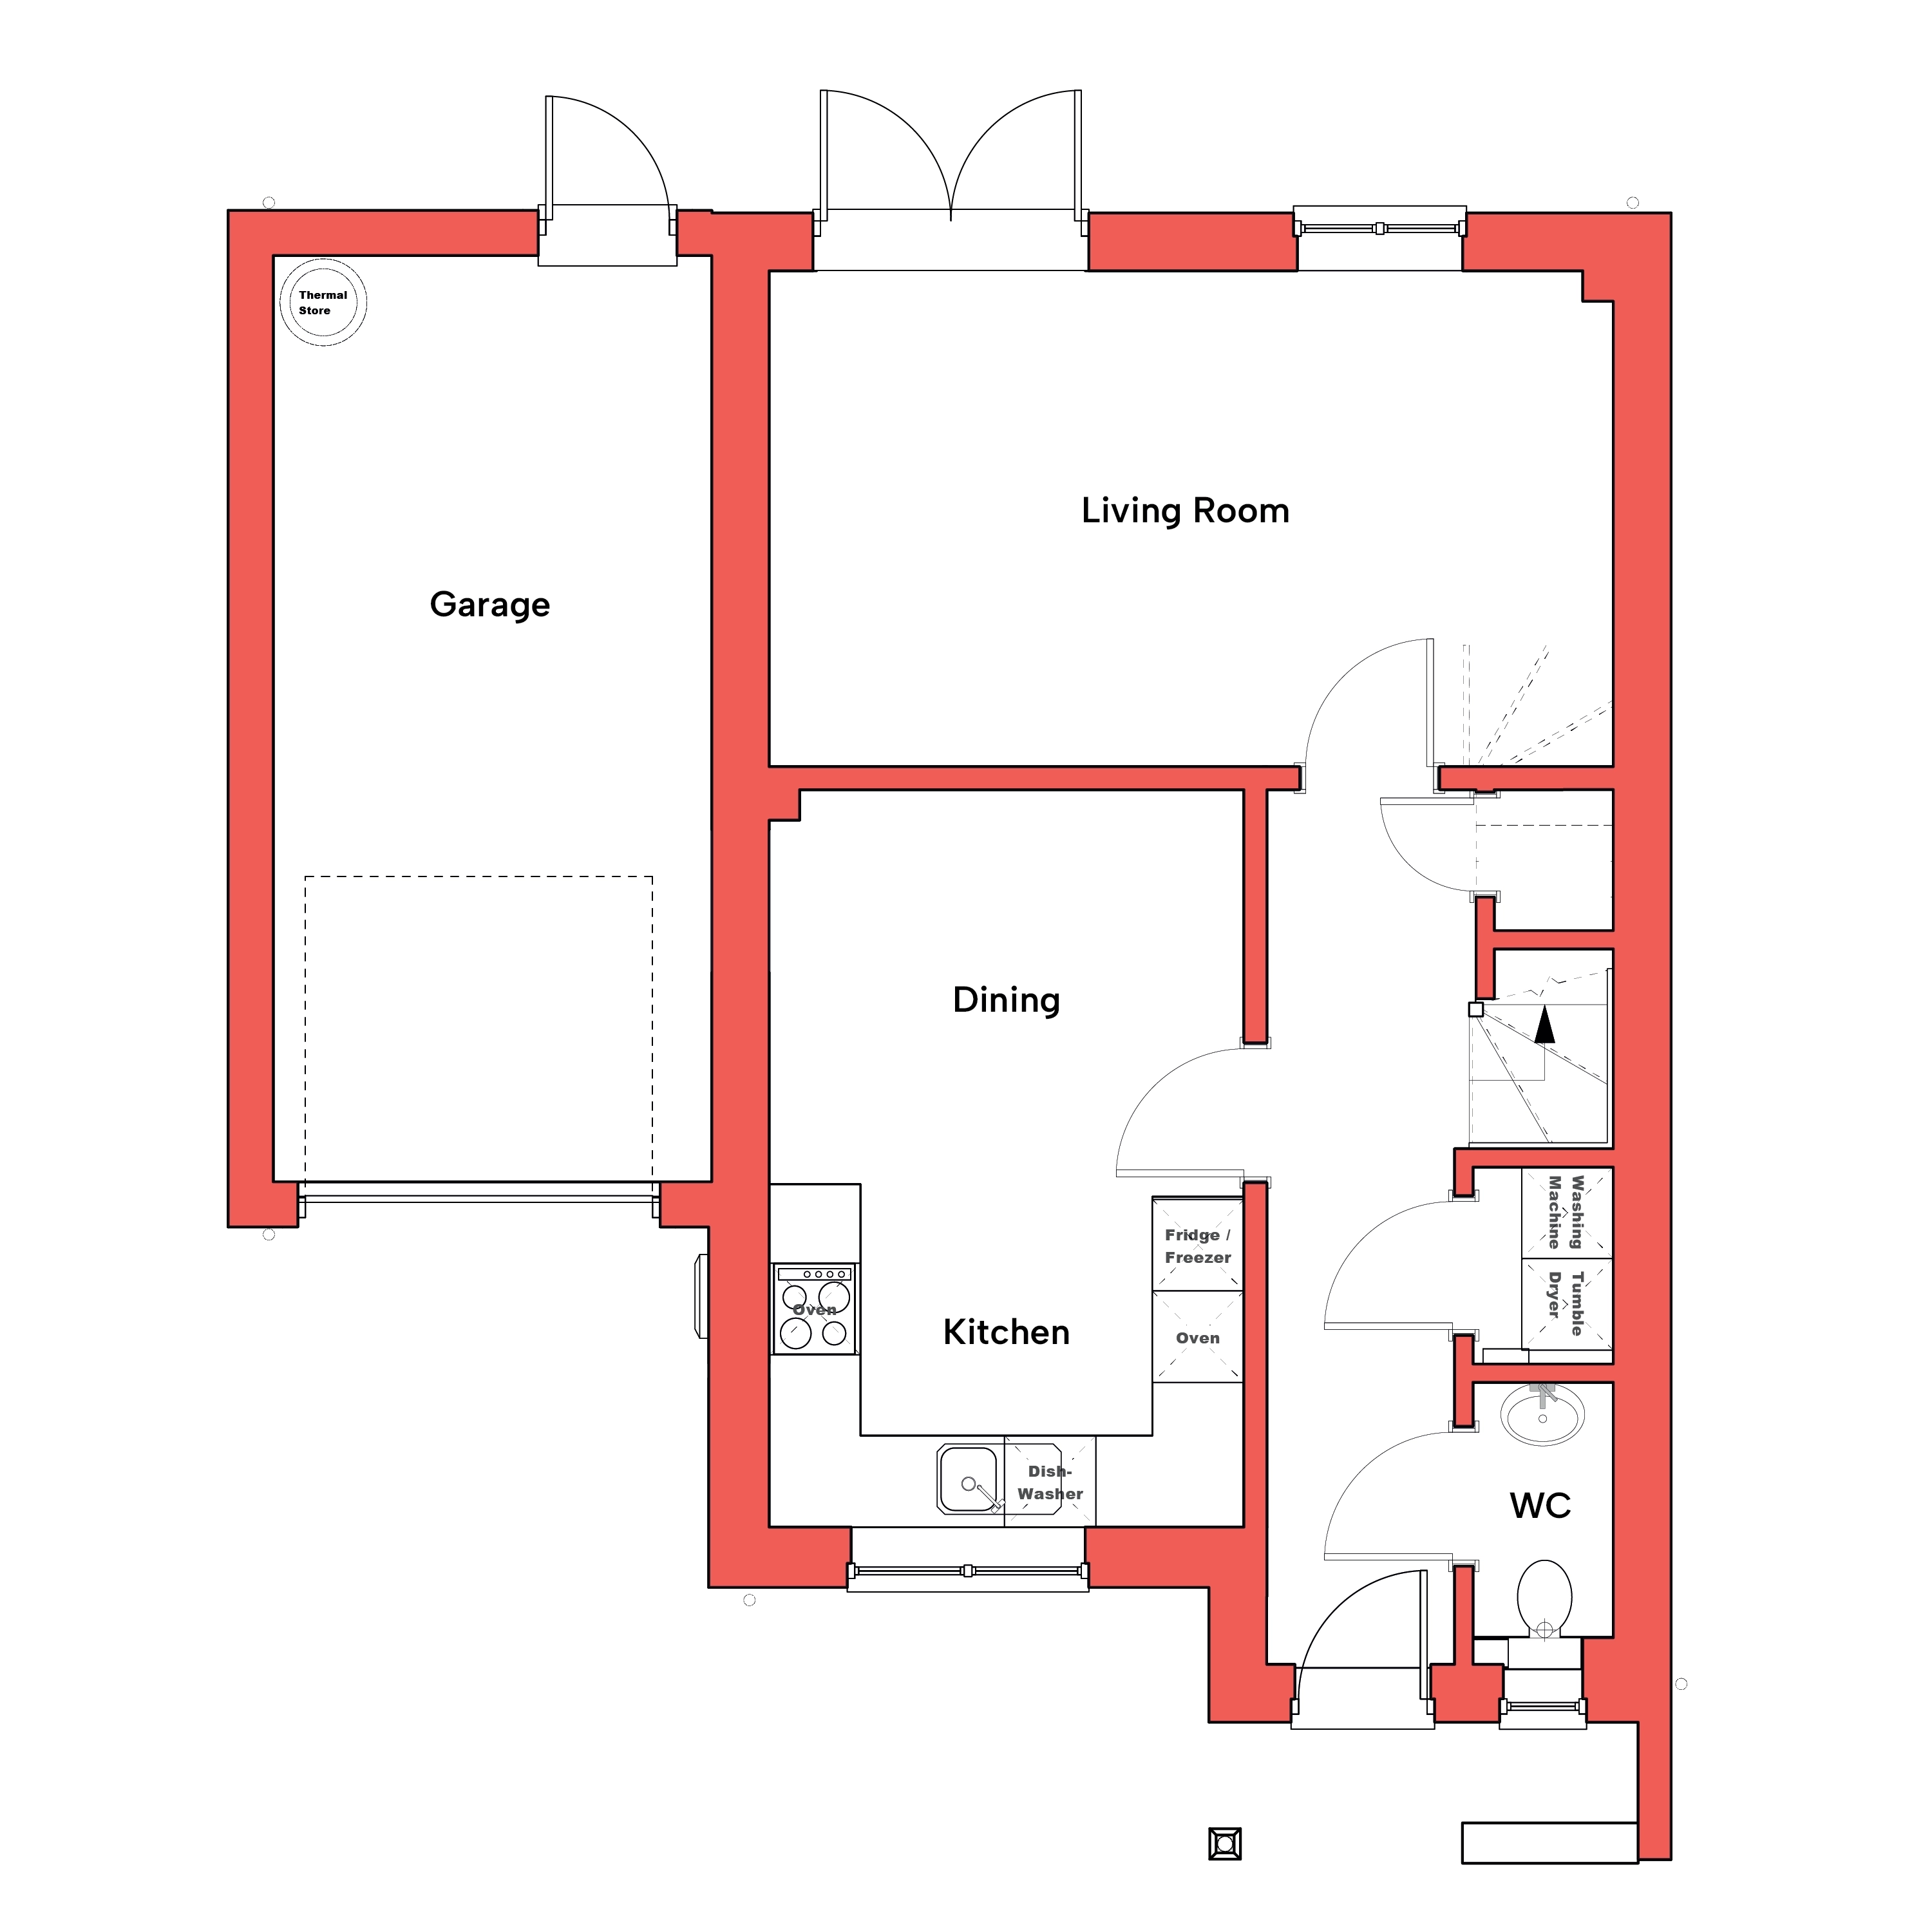 Ground floor floor plan of The Warbler